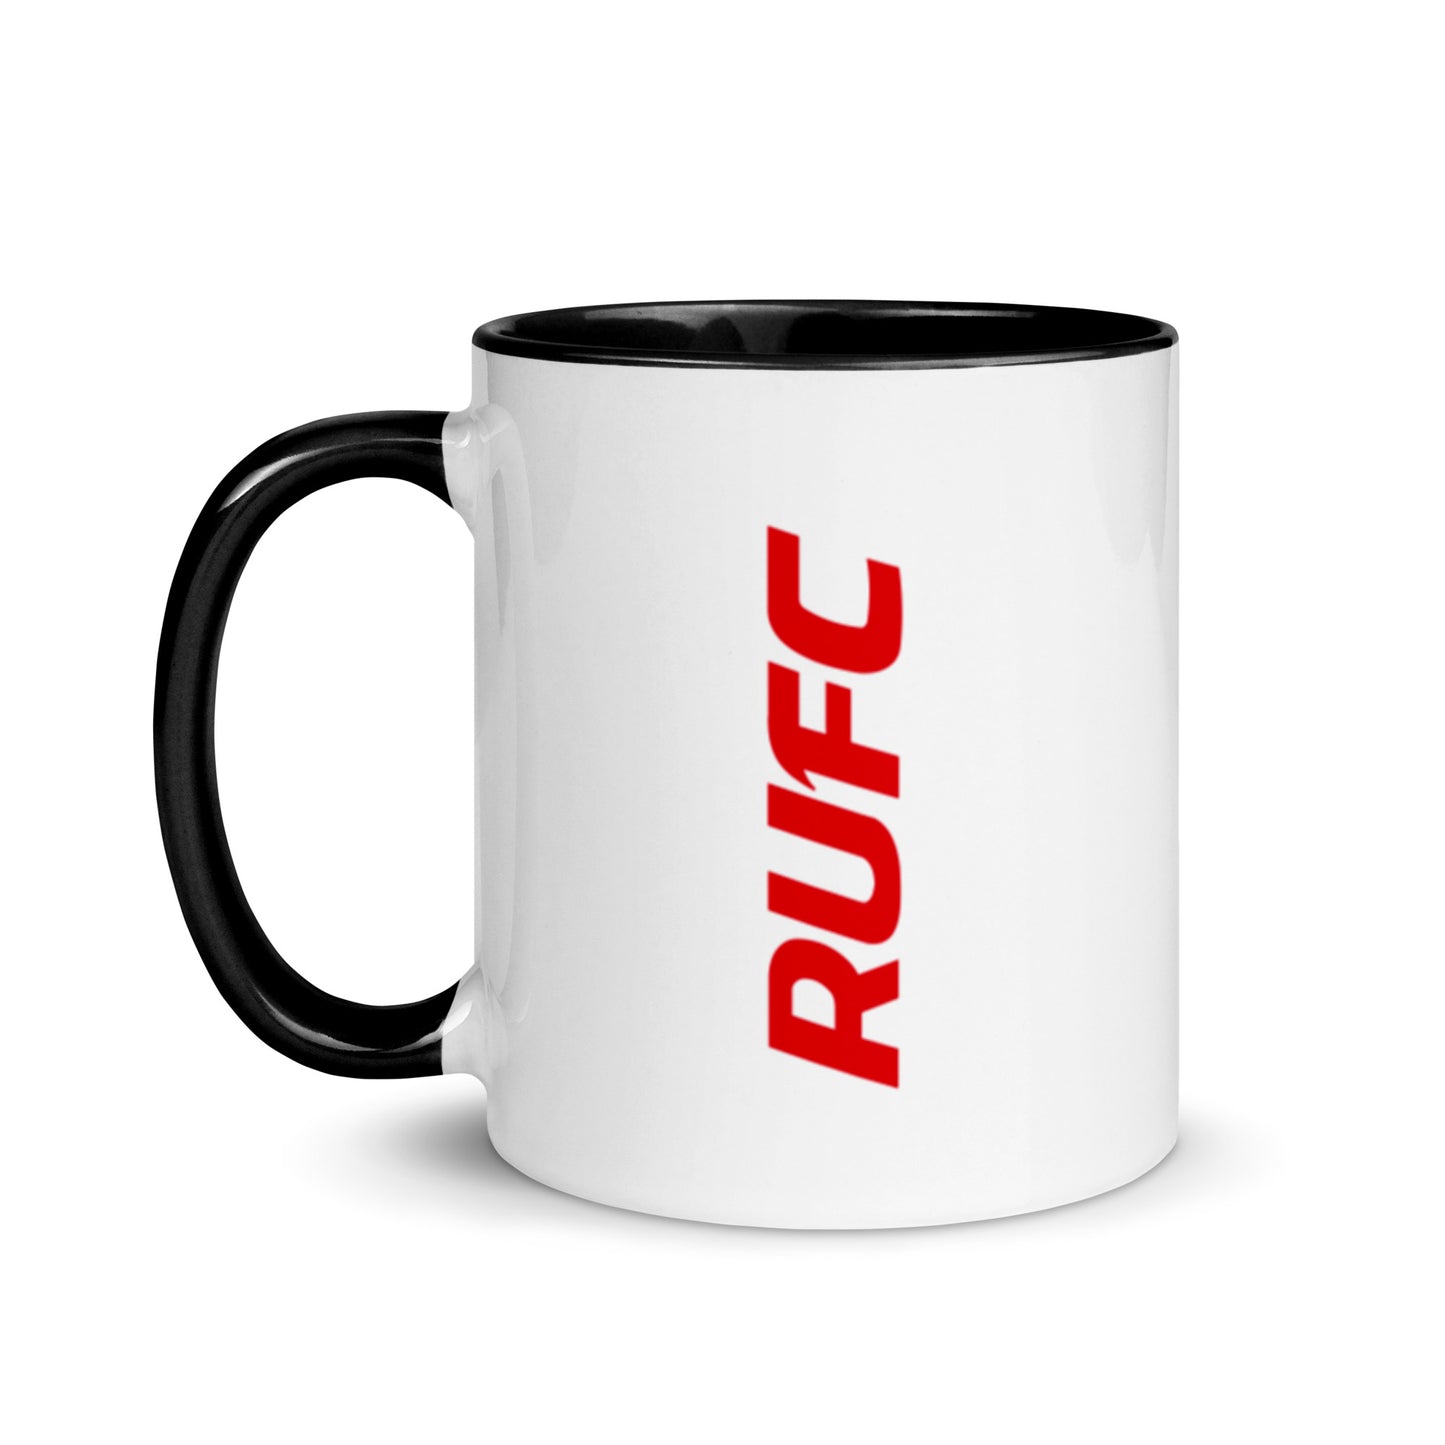 RUFC Coffee Mug